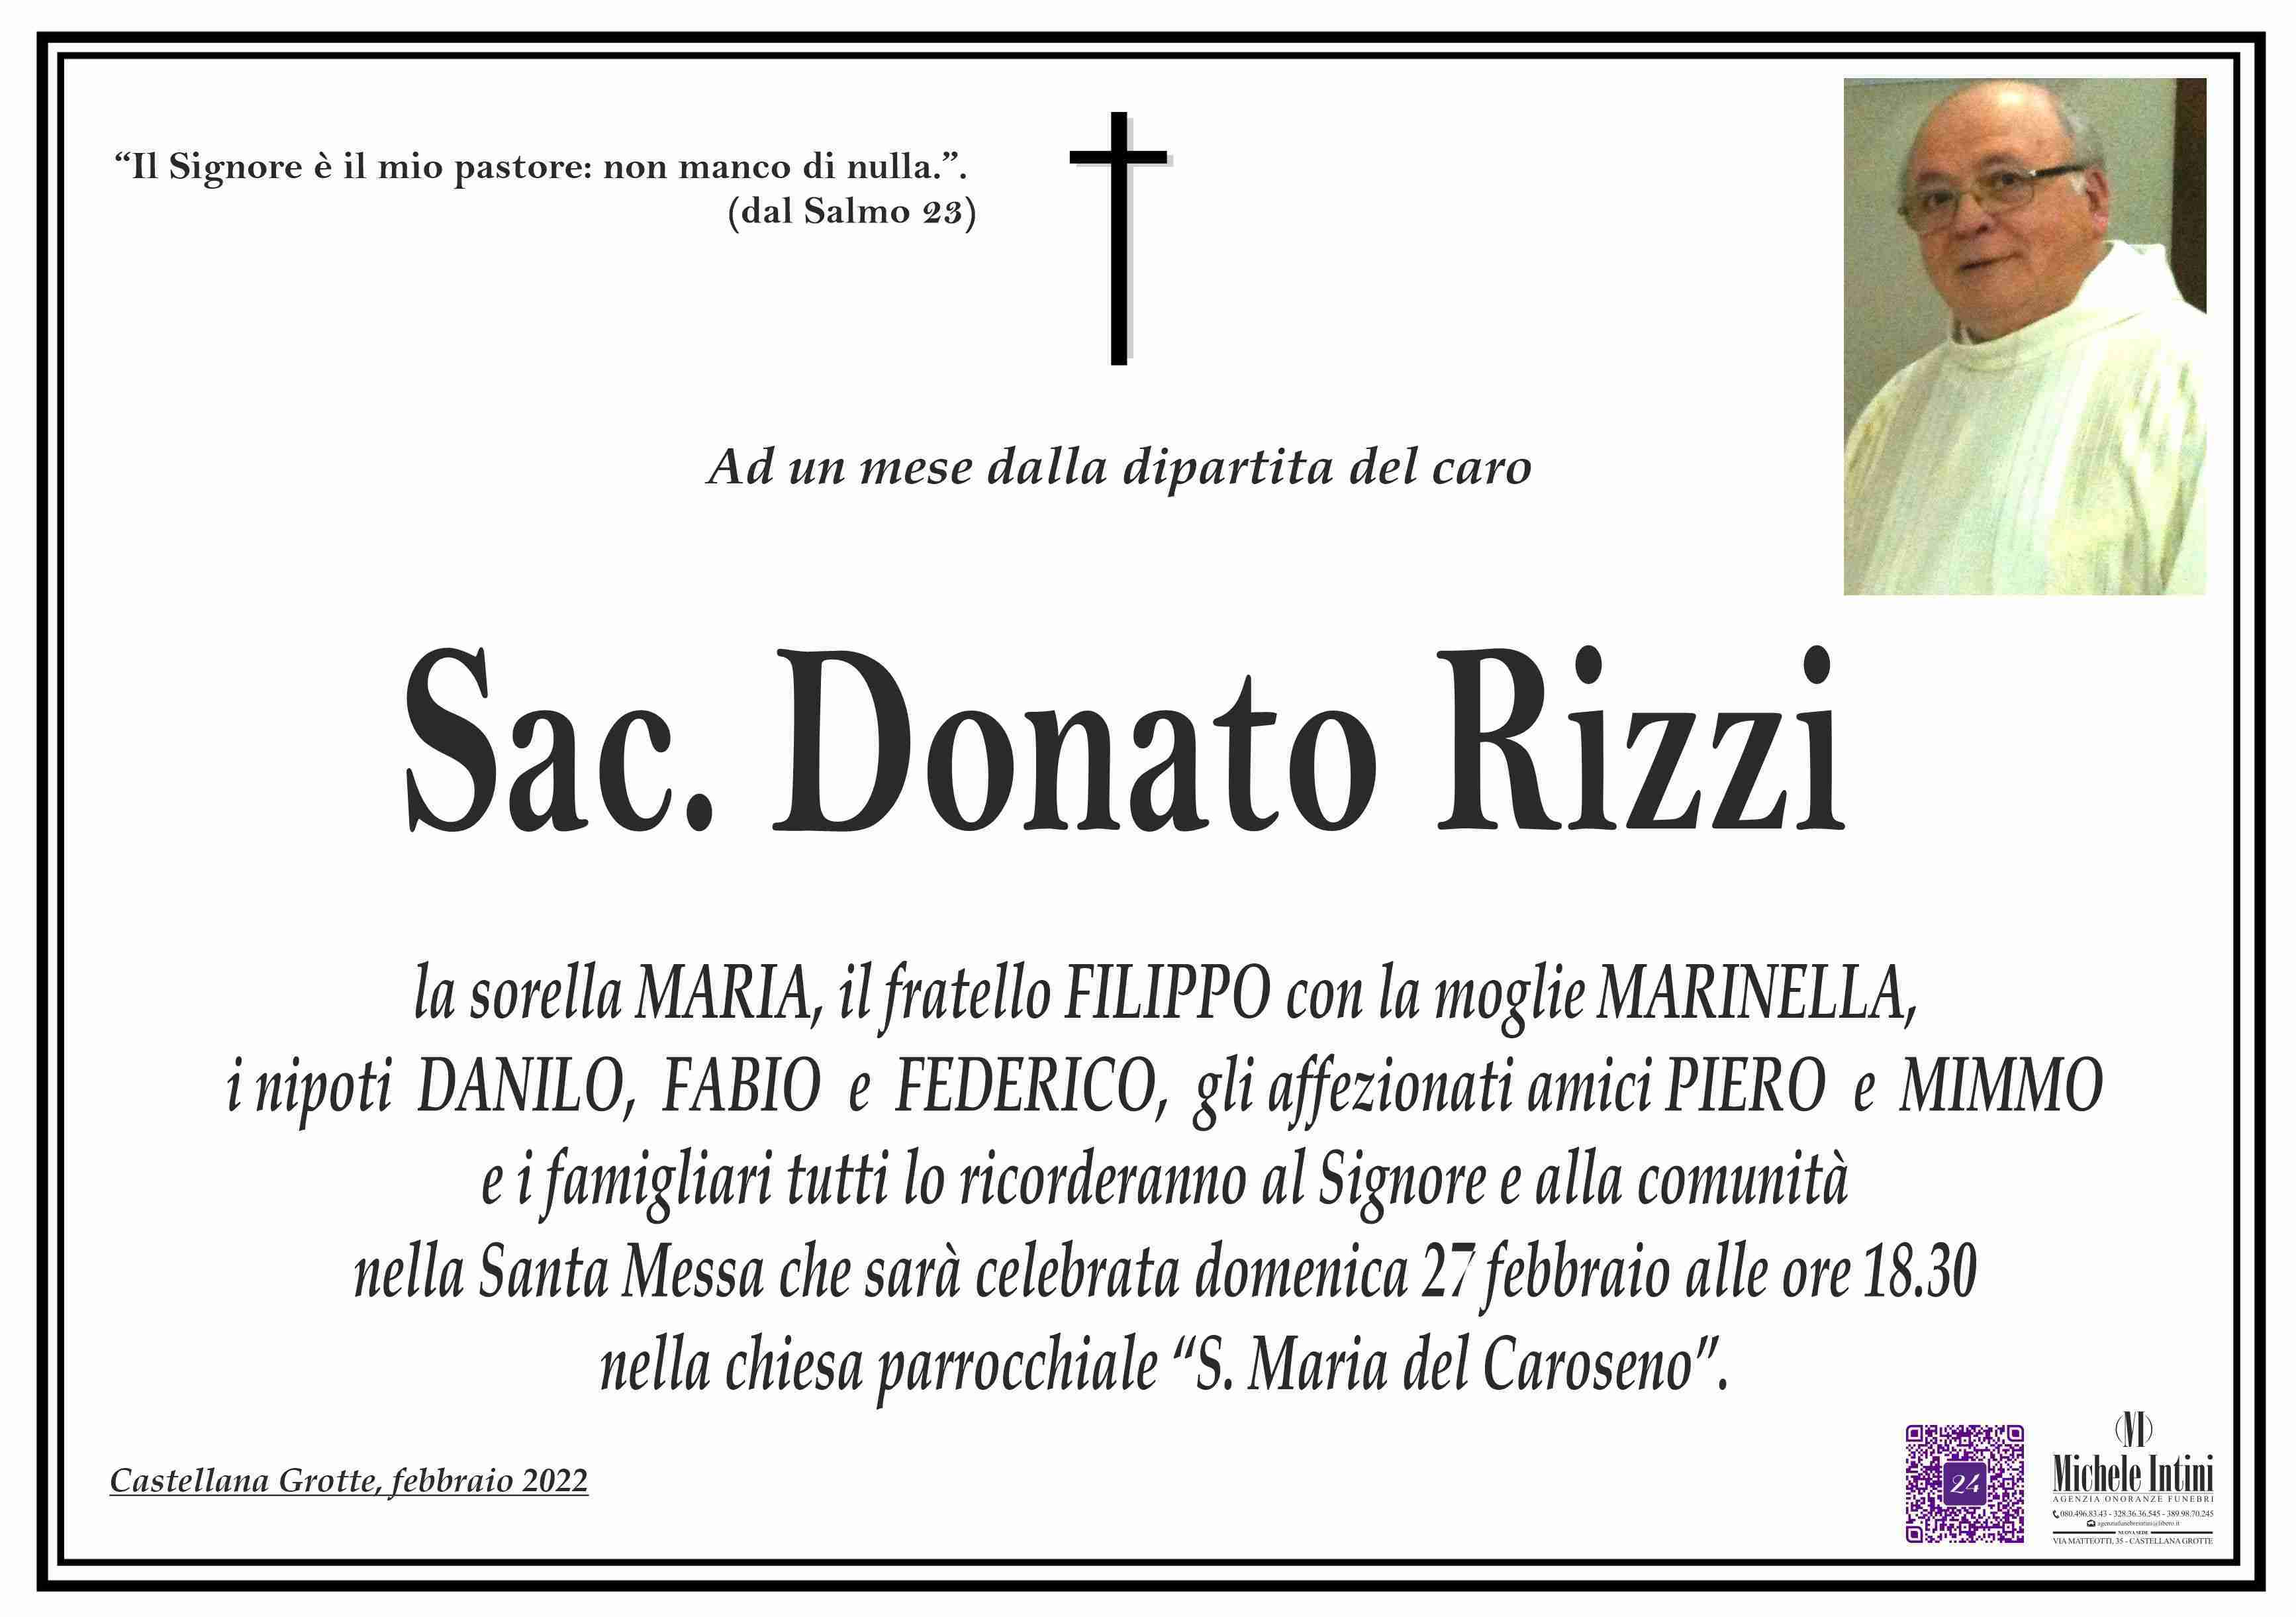 Donato Rizzi